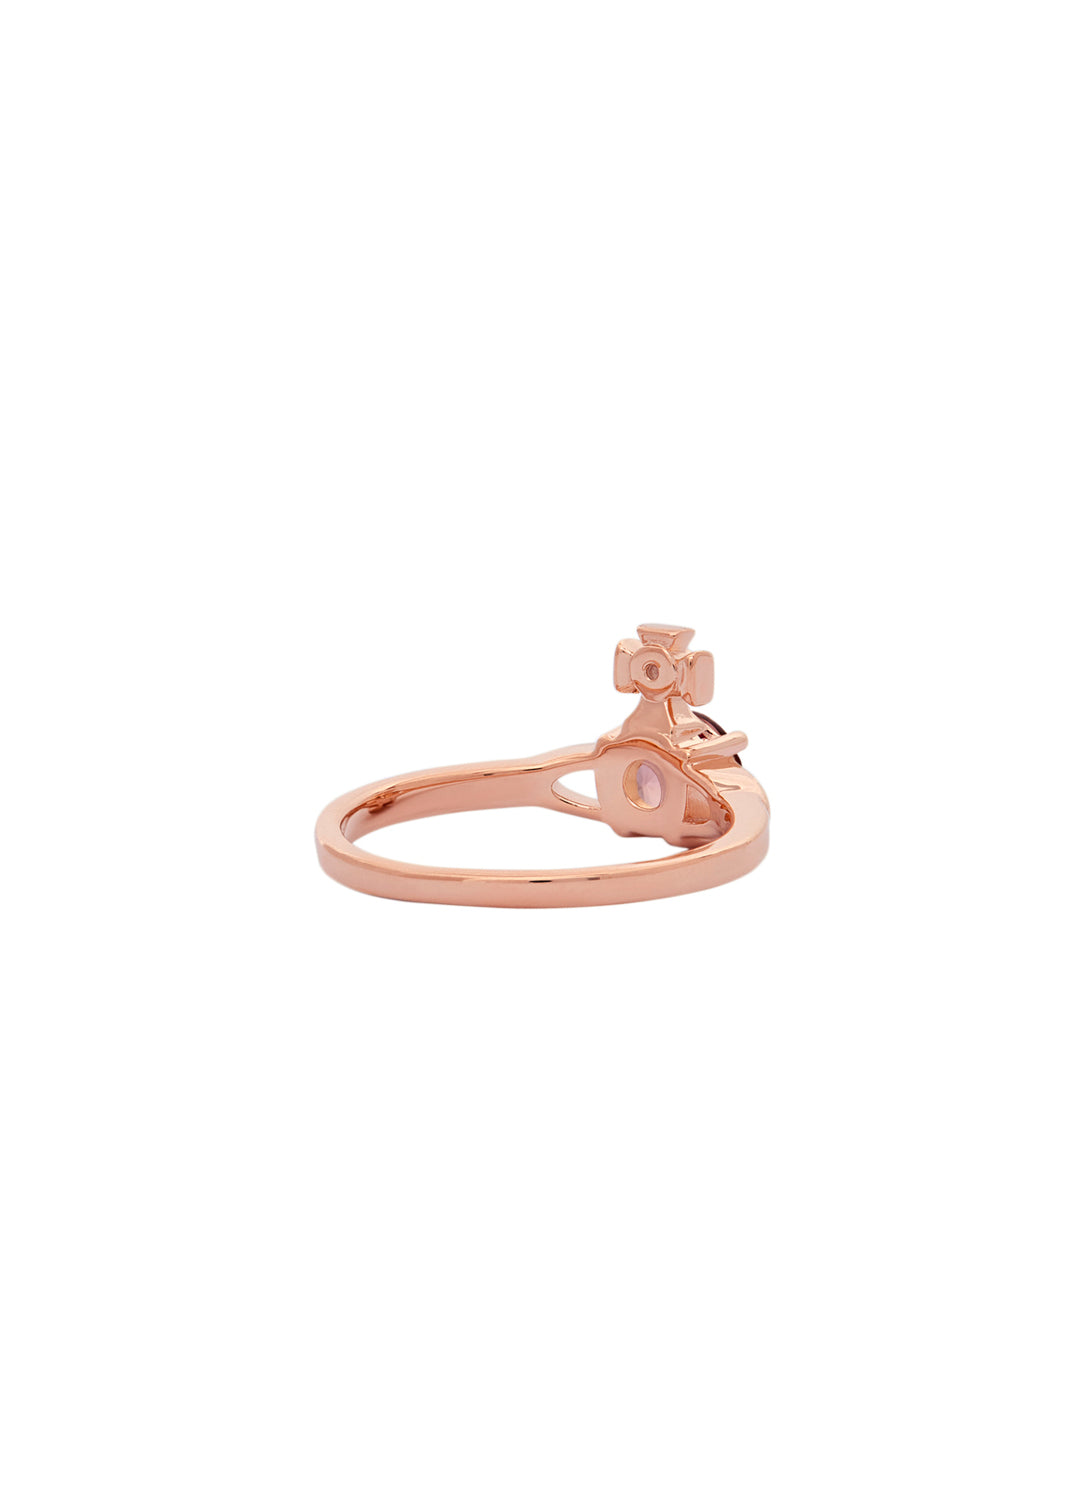 Reina Petite Ring - Rose Gold/Pink - 64040006-01G335-SM – Sarah Layton